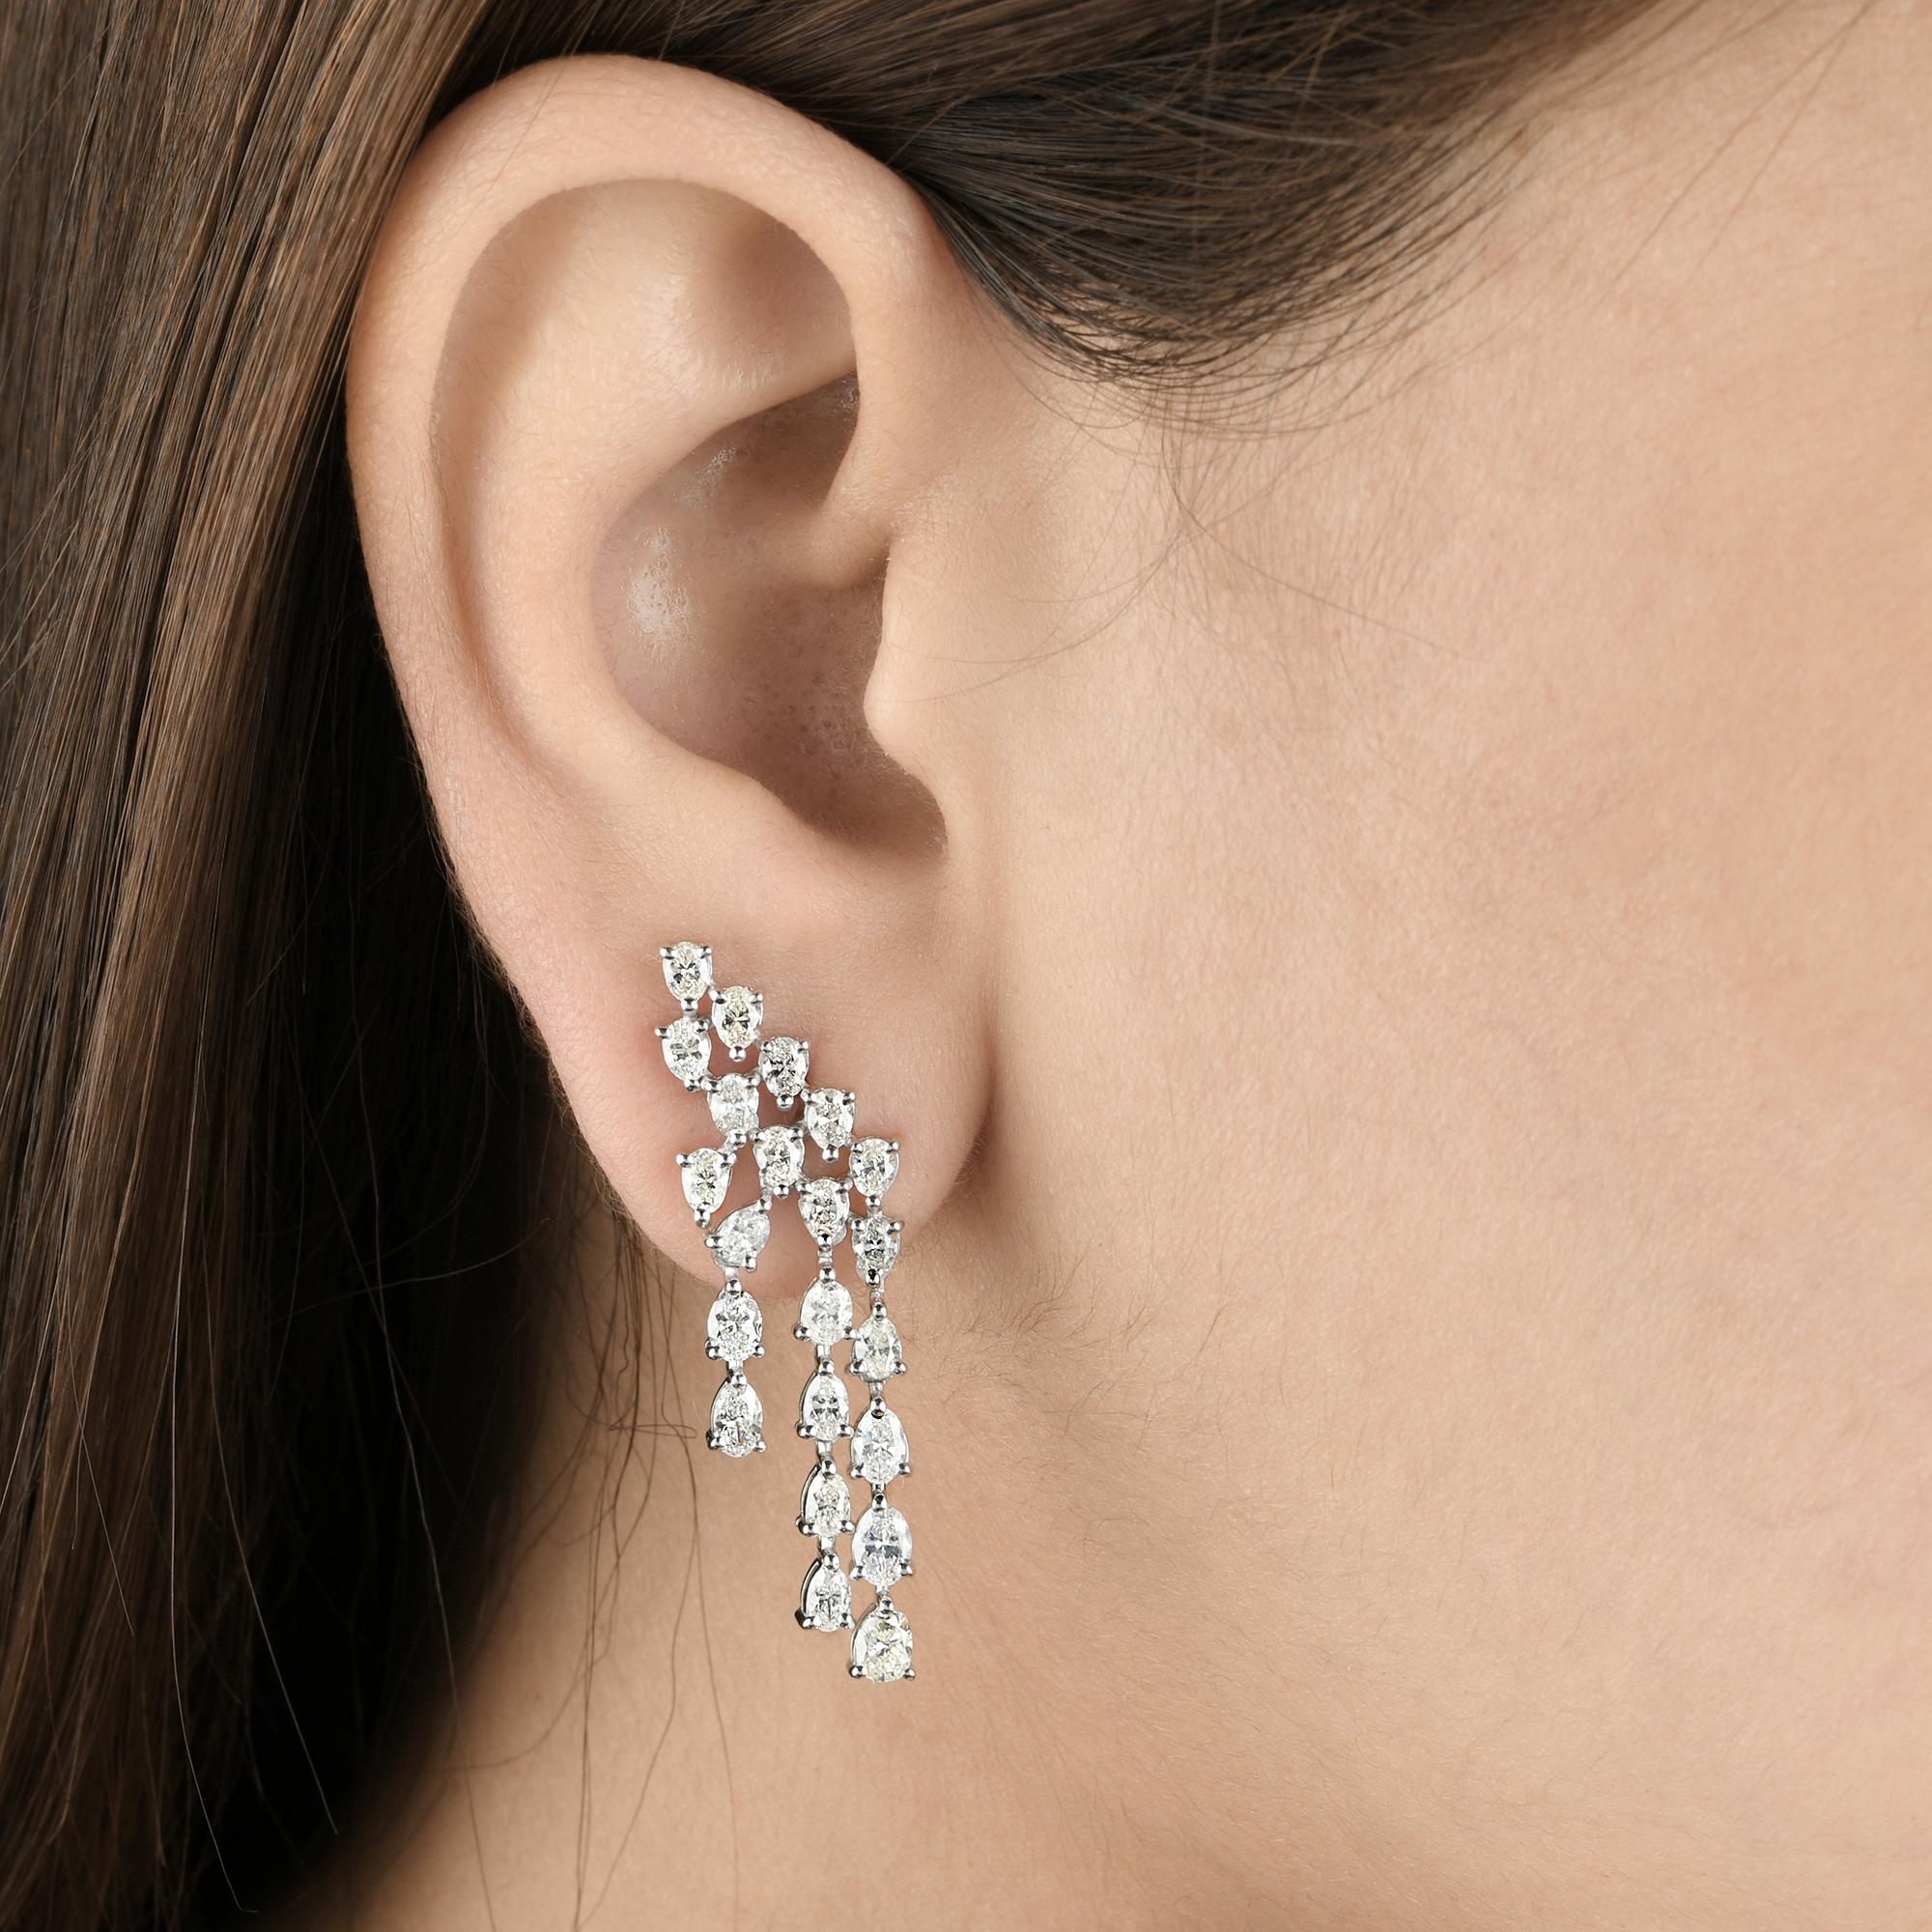 Modern SI Clarity HI Color Pear Shape Diamond Designer Earrings 18 Karat White Gold For Sale